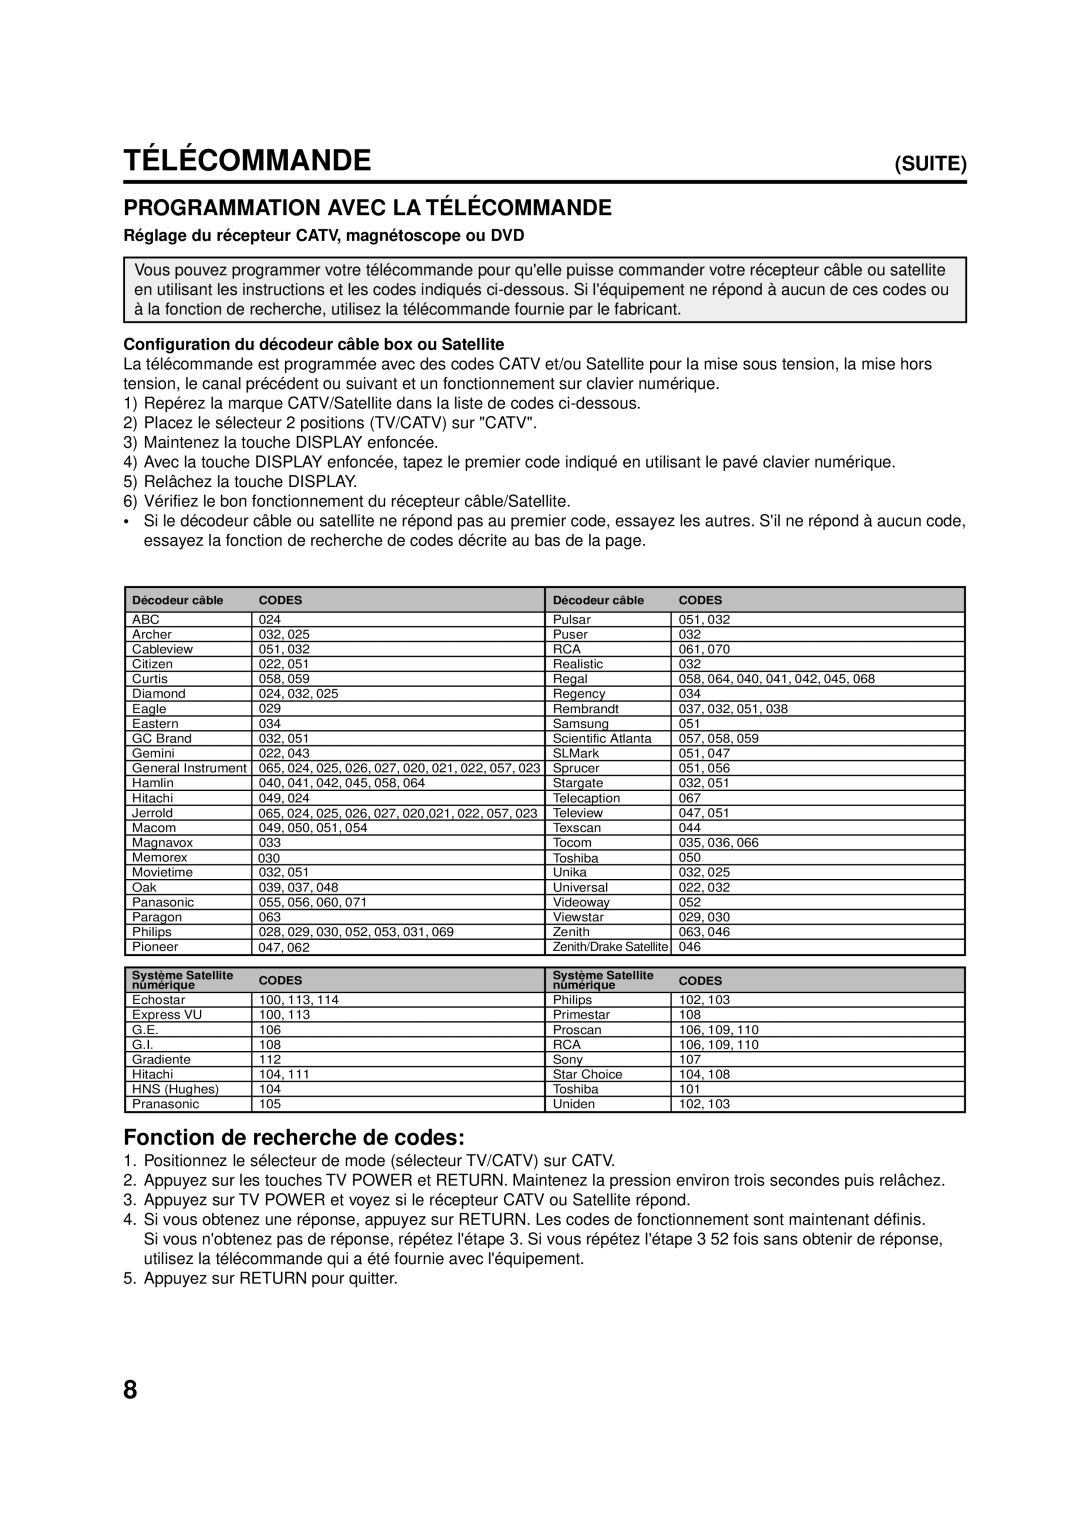 Aiwa AV-14F703 manual Programmation Avec LA TÉ LÉ Commande, Ré glage du ré cepteur CATV, magné toscope ou DVD 